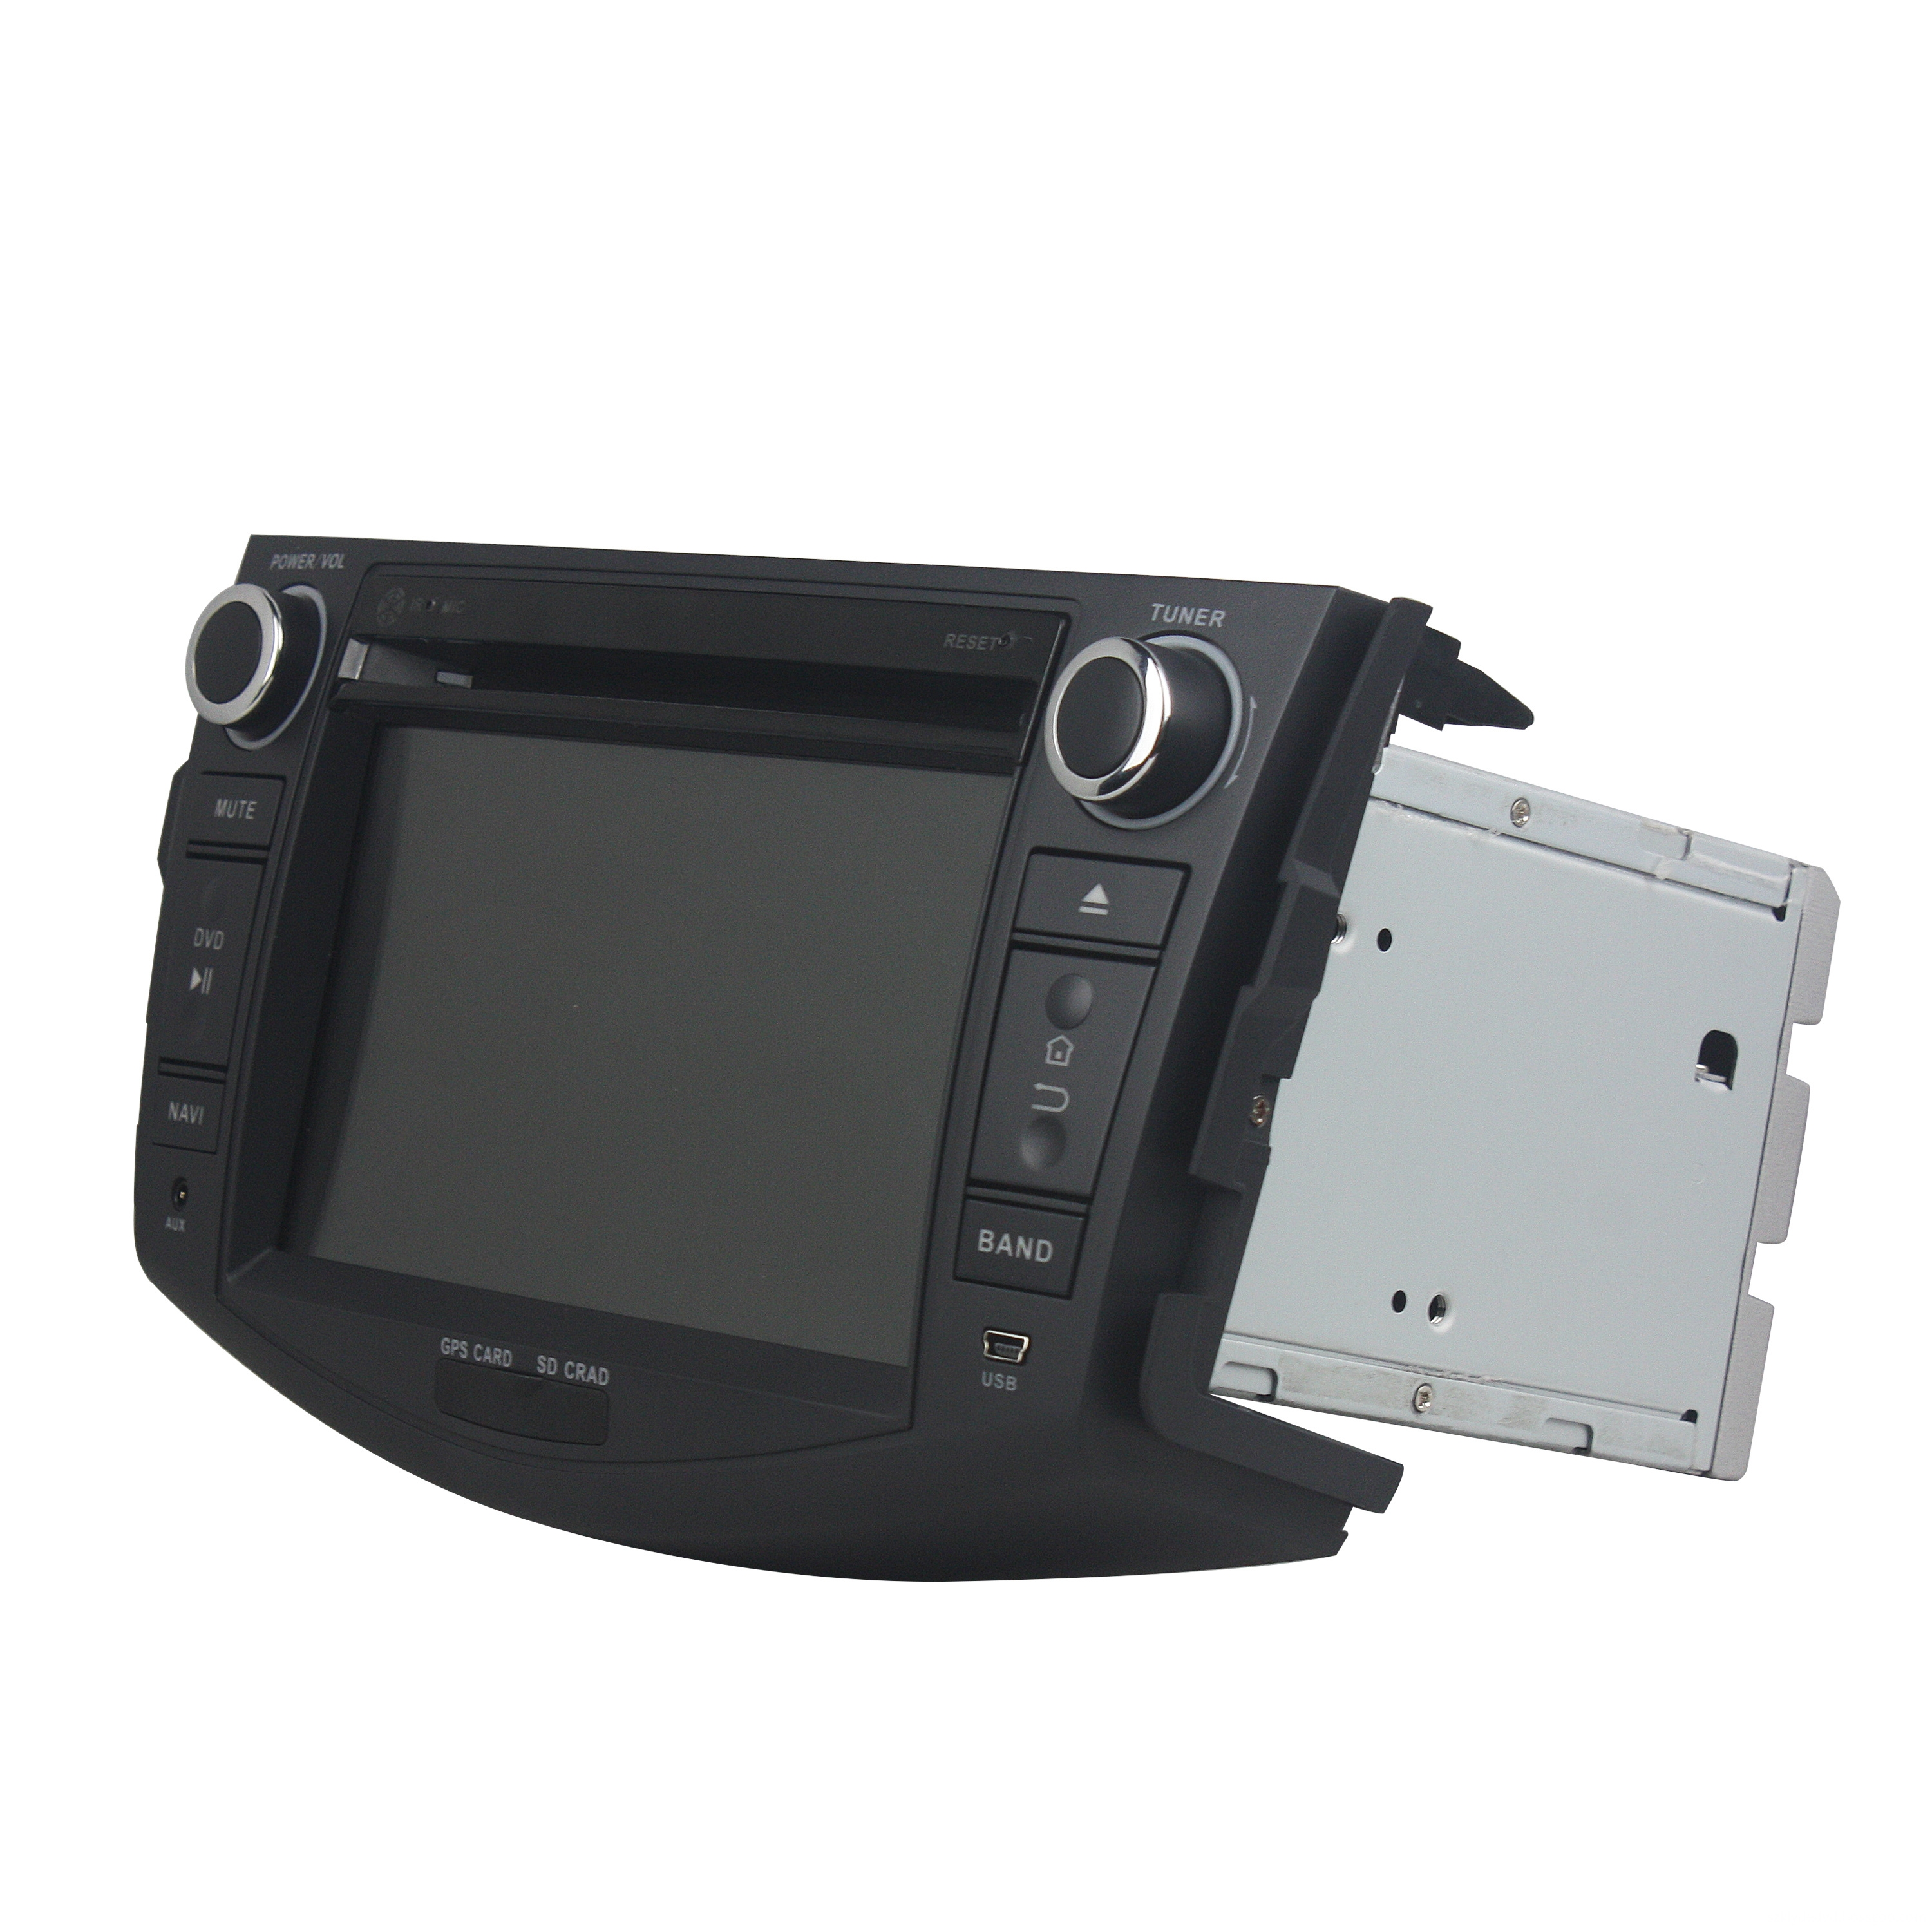 car audio accessories for RAV4 2006-2012